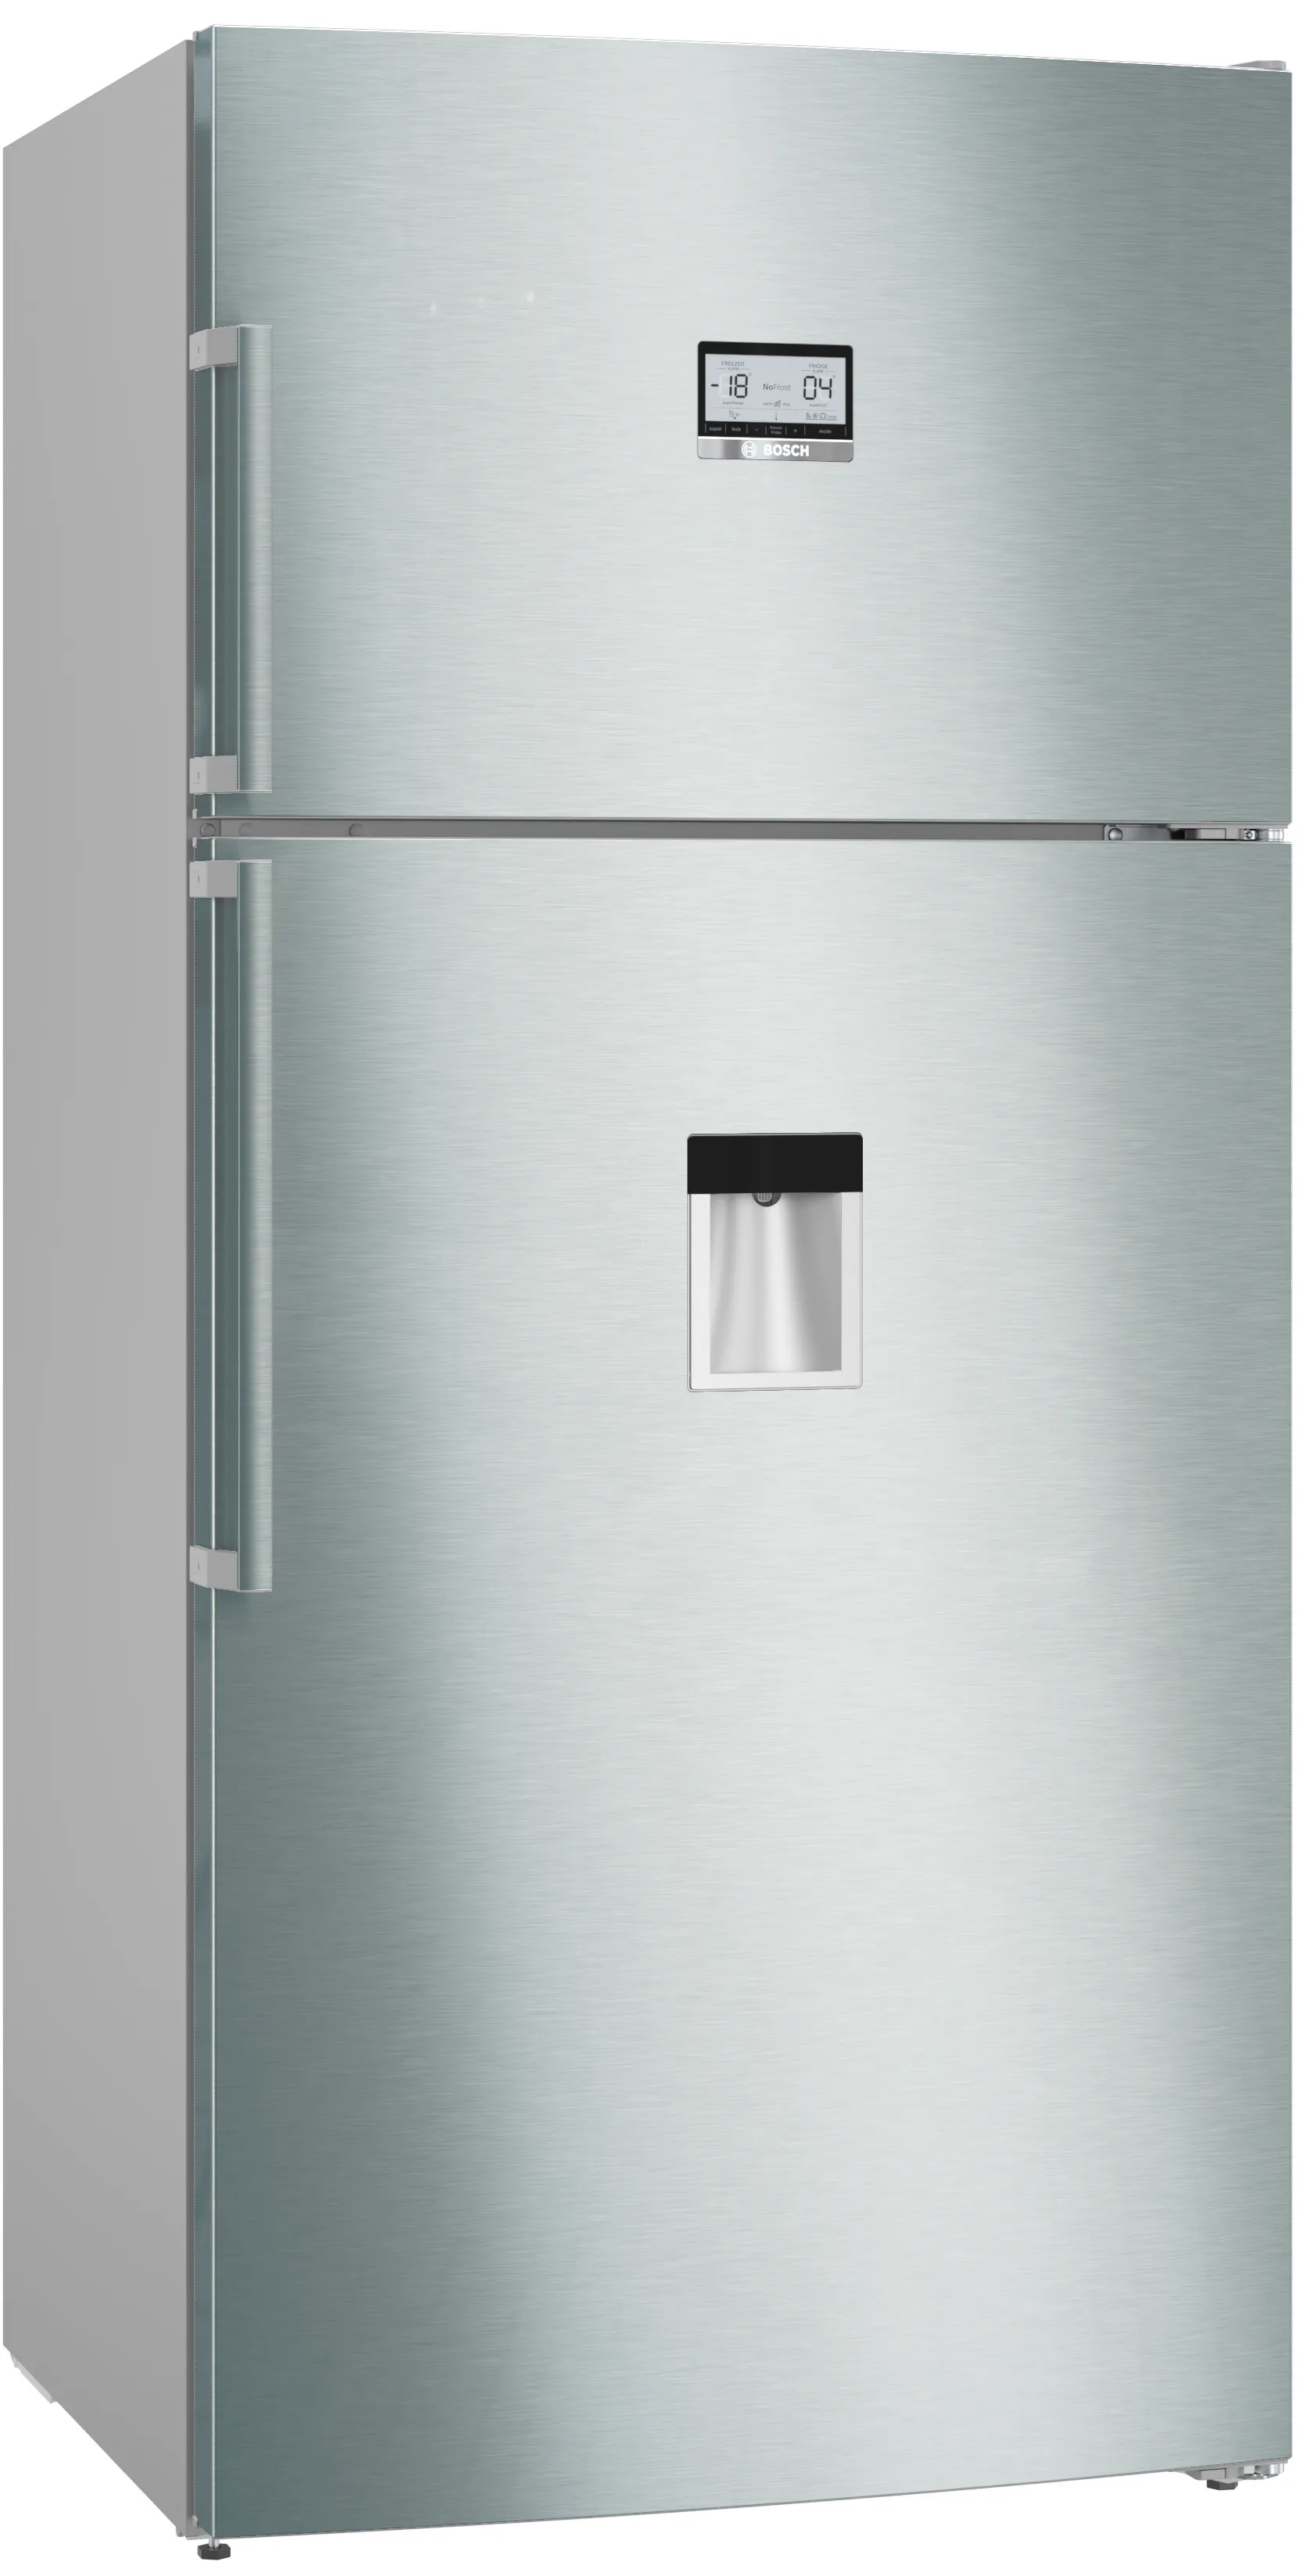 Σειρά 6 Ελεύθερο δίπορτο ψυγείο 186 x 86 cm Brushed steel anti-fingerprint 